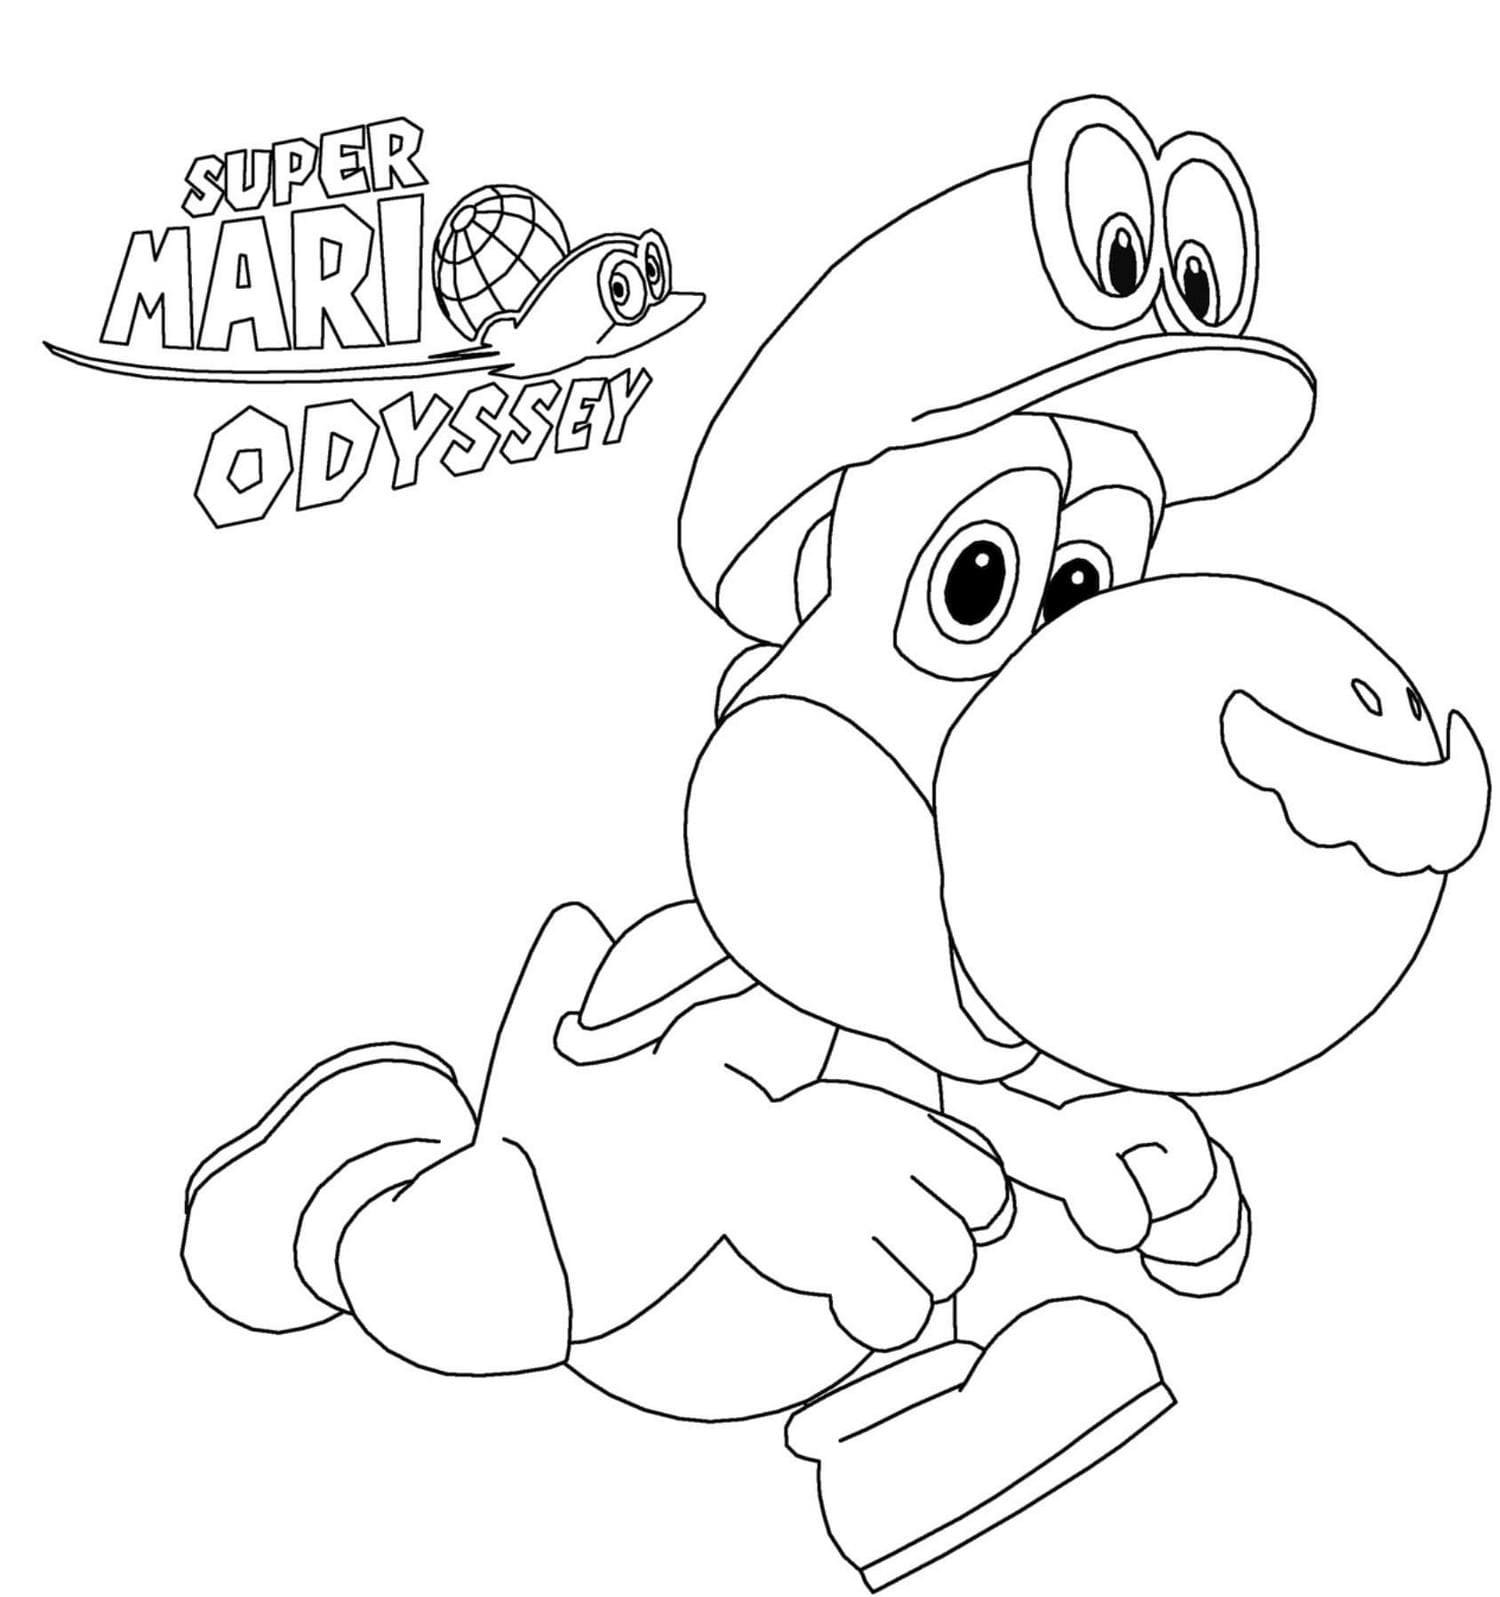 Super Mario Odyssey раскраска